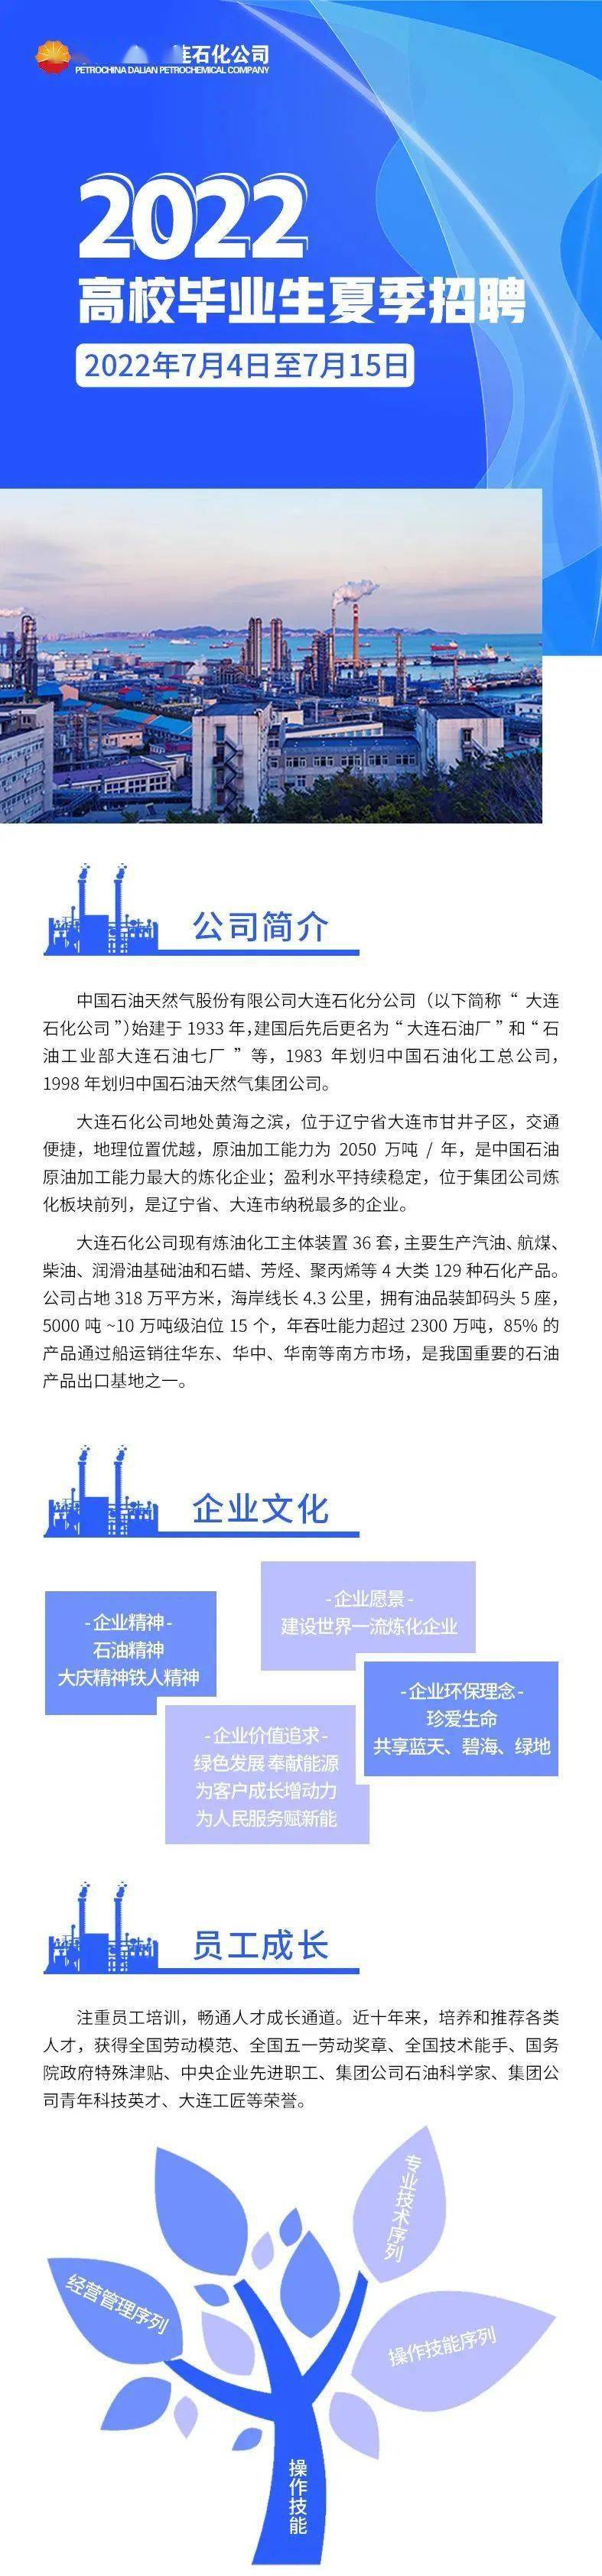 

中国博鱼石油天然气股份有限公司大连石化公司招聘